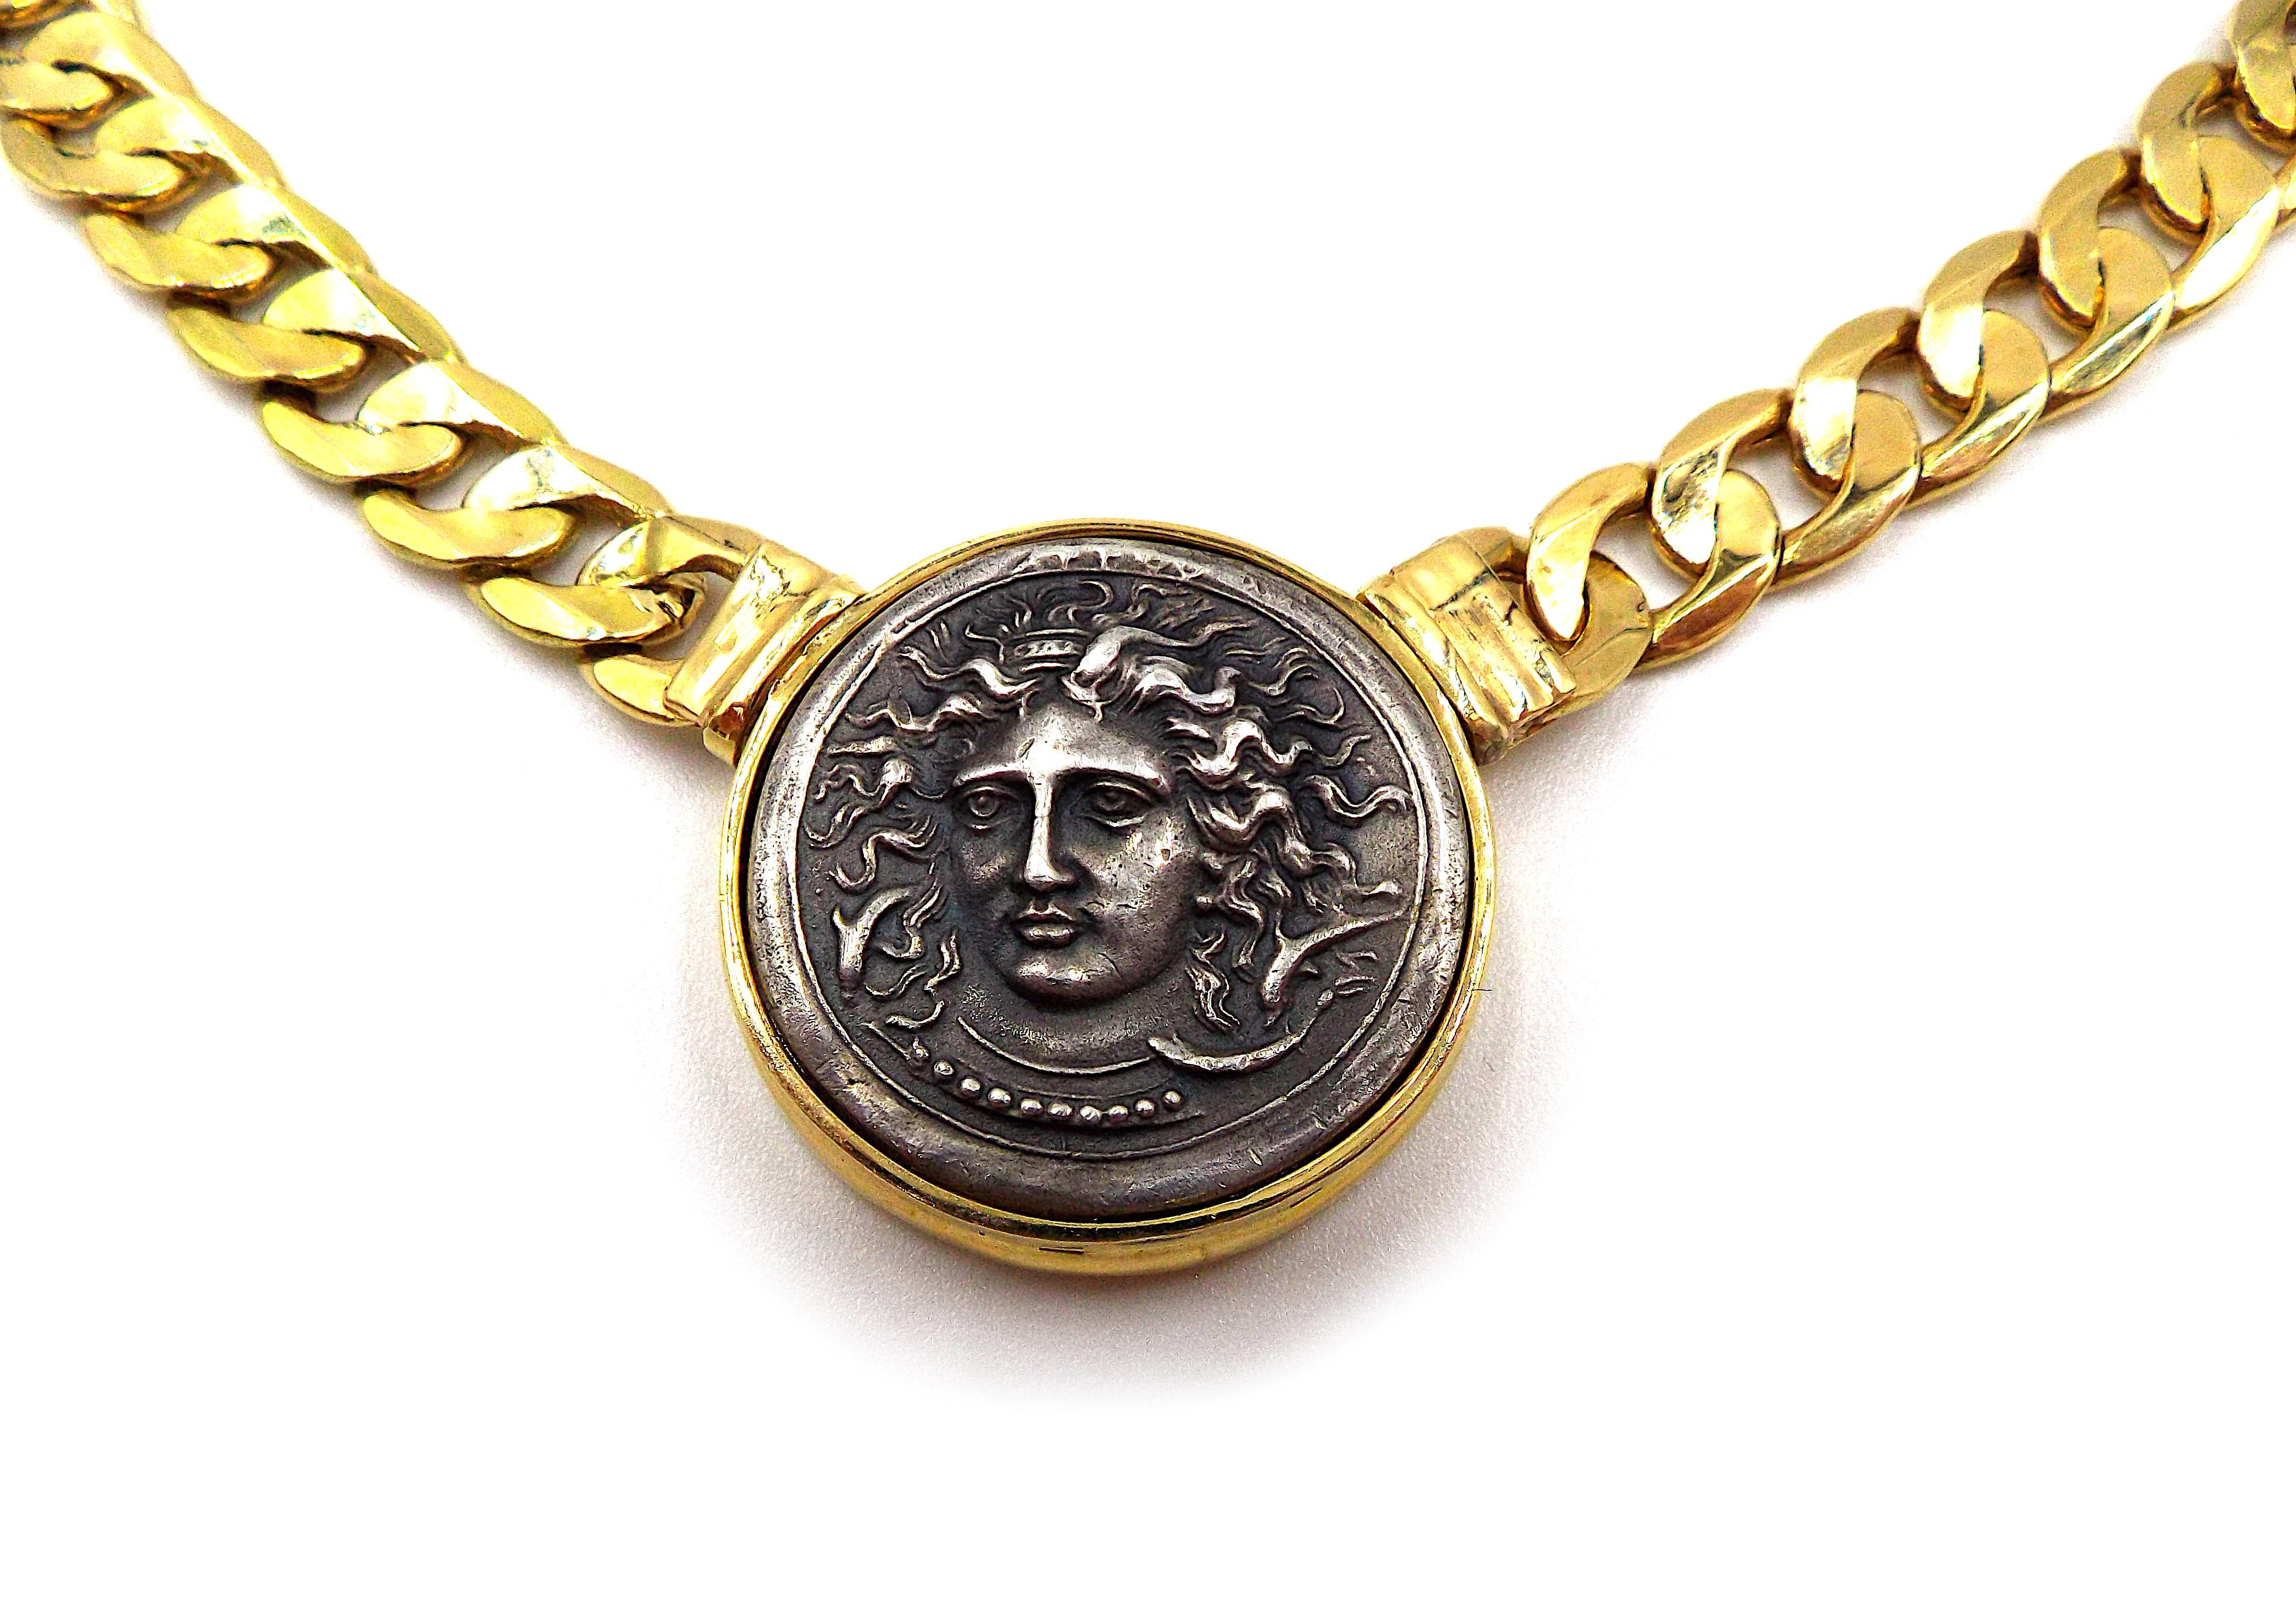 Collier vintage en or orné d'une pièce de monnaie ancienne en argent. Avec des marques d'immatriculation italiennes, estampillées 750. La longueur du collier est d'environ 16,5 pouces. Le diamètre de la pièce est d'environ 1 pouce. Le poids est de